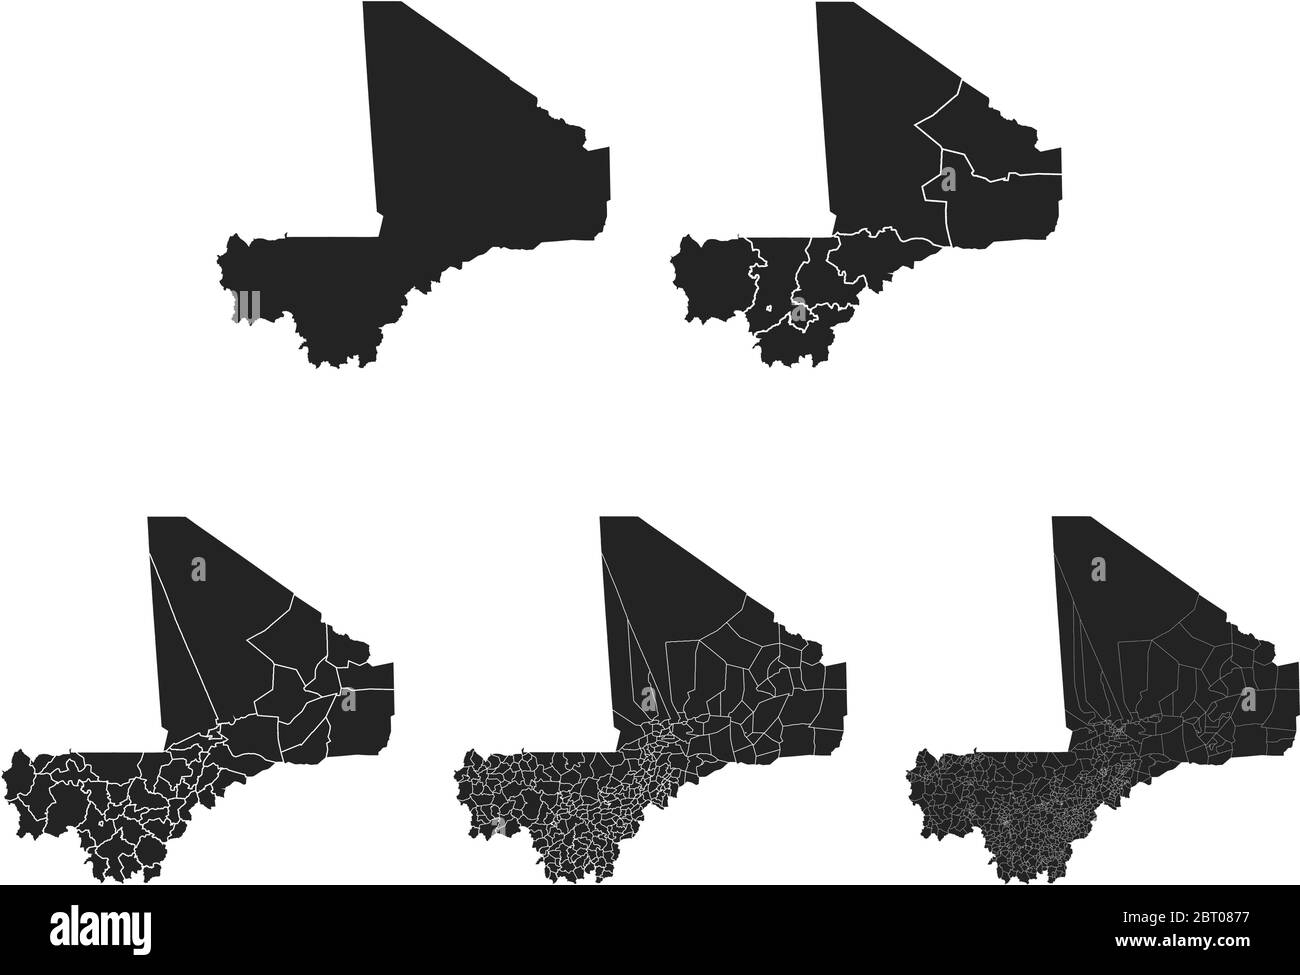 Cartes vectorielles du Mali avec régions administratives, municipalités, départements, frontières Illustration de Vecteur